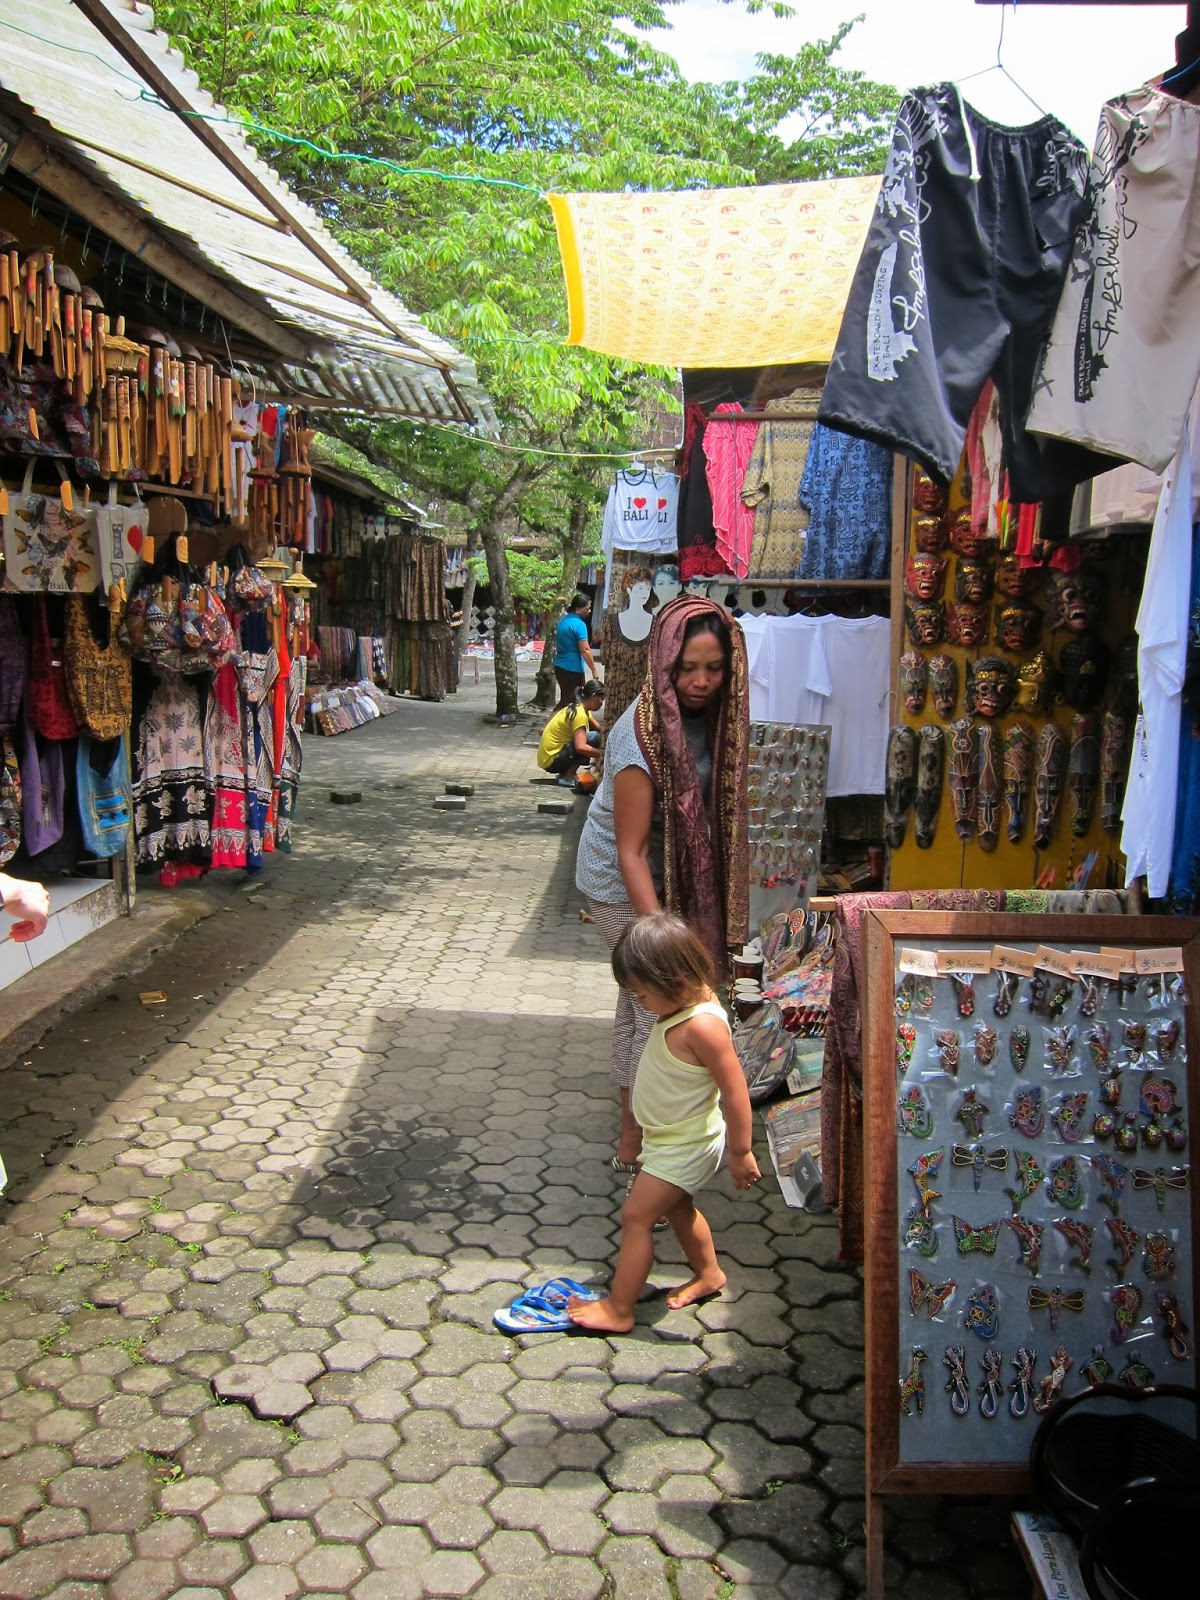 【峇里島自由行】Bali 慶生之旅D2 (上) -象洞/聖泉寺/Tegallalang/ I Made Joni。造訪烏布古蹟遺址